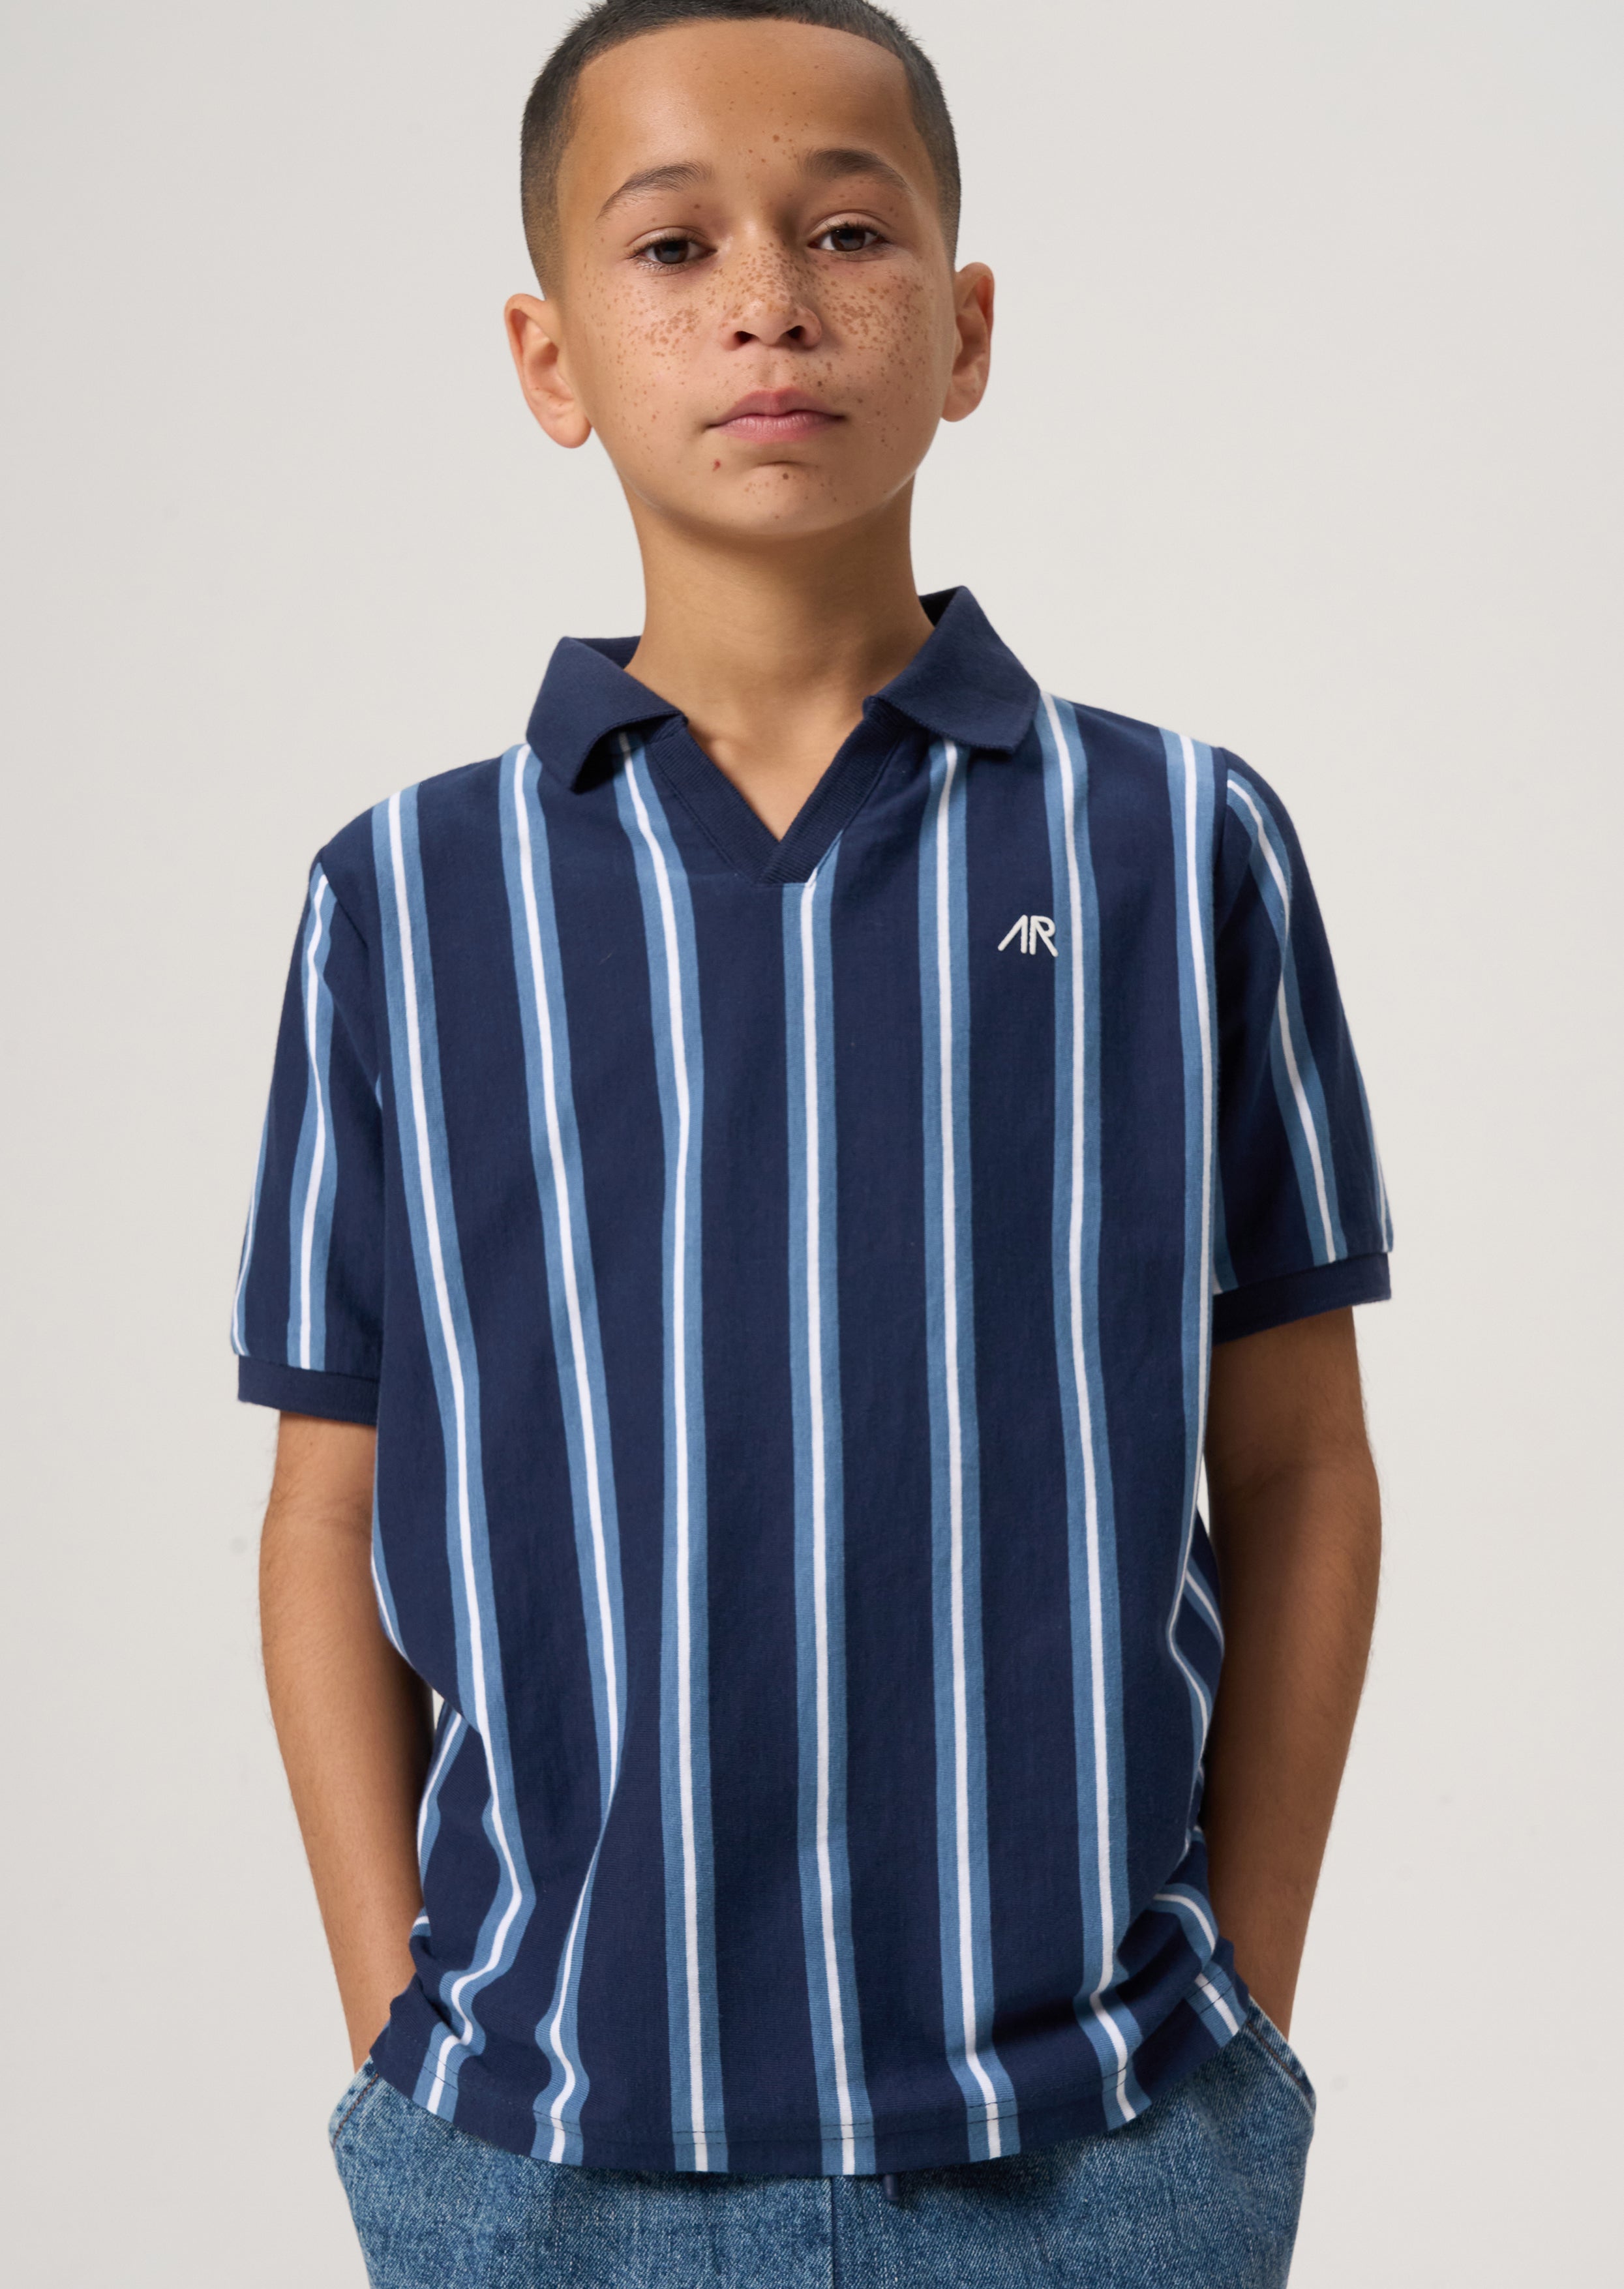 Boys Navy Striped Polo Collar Cotton T-Shirt